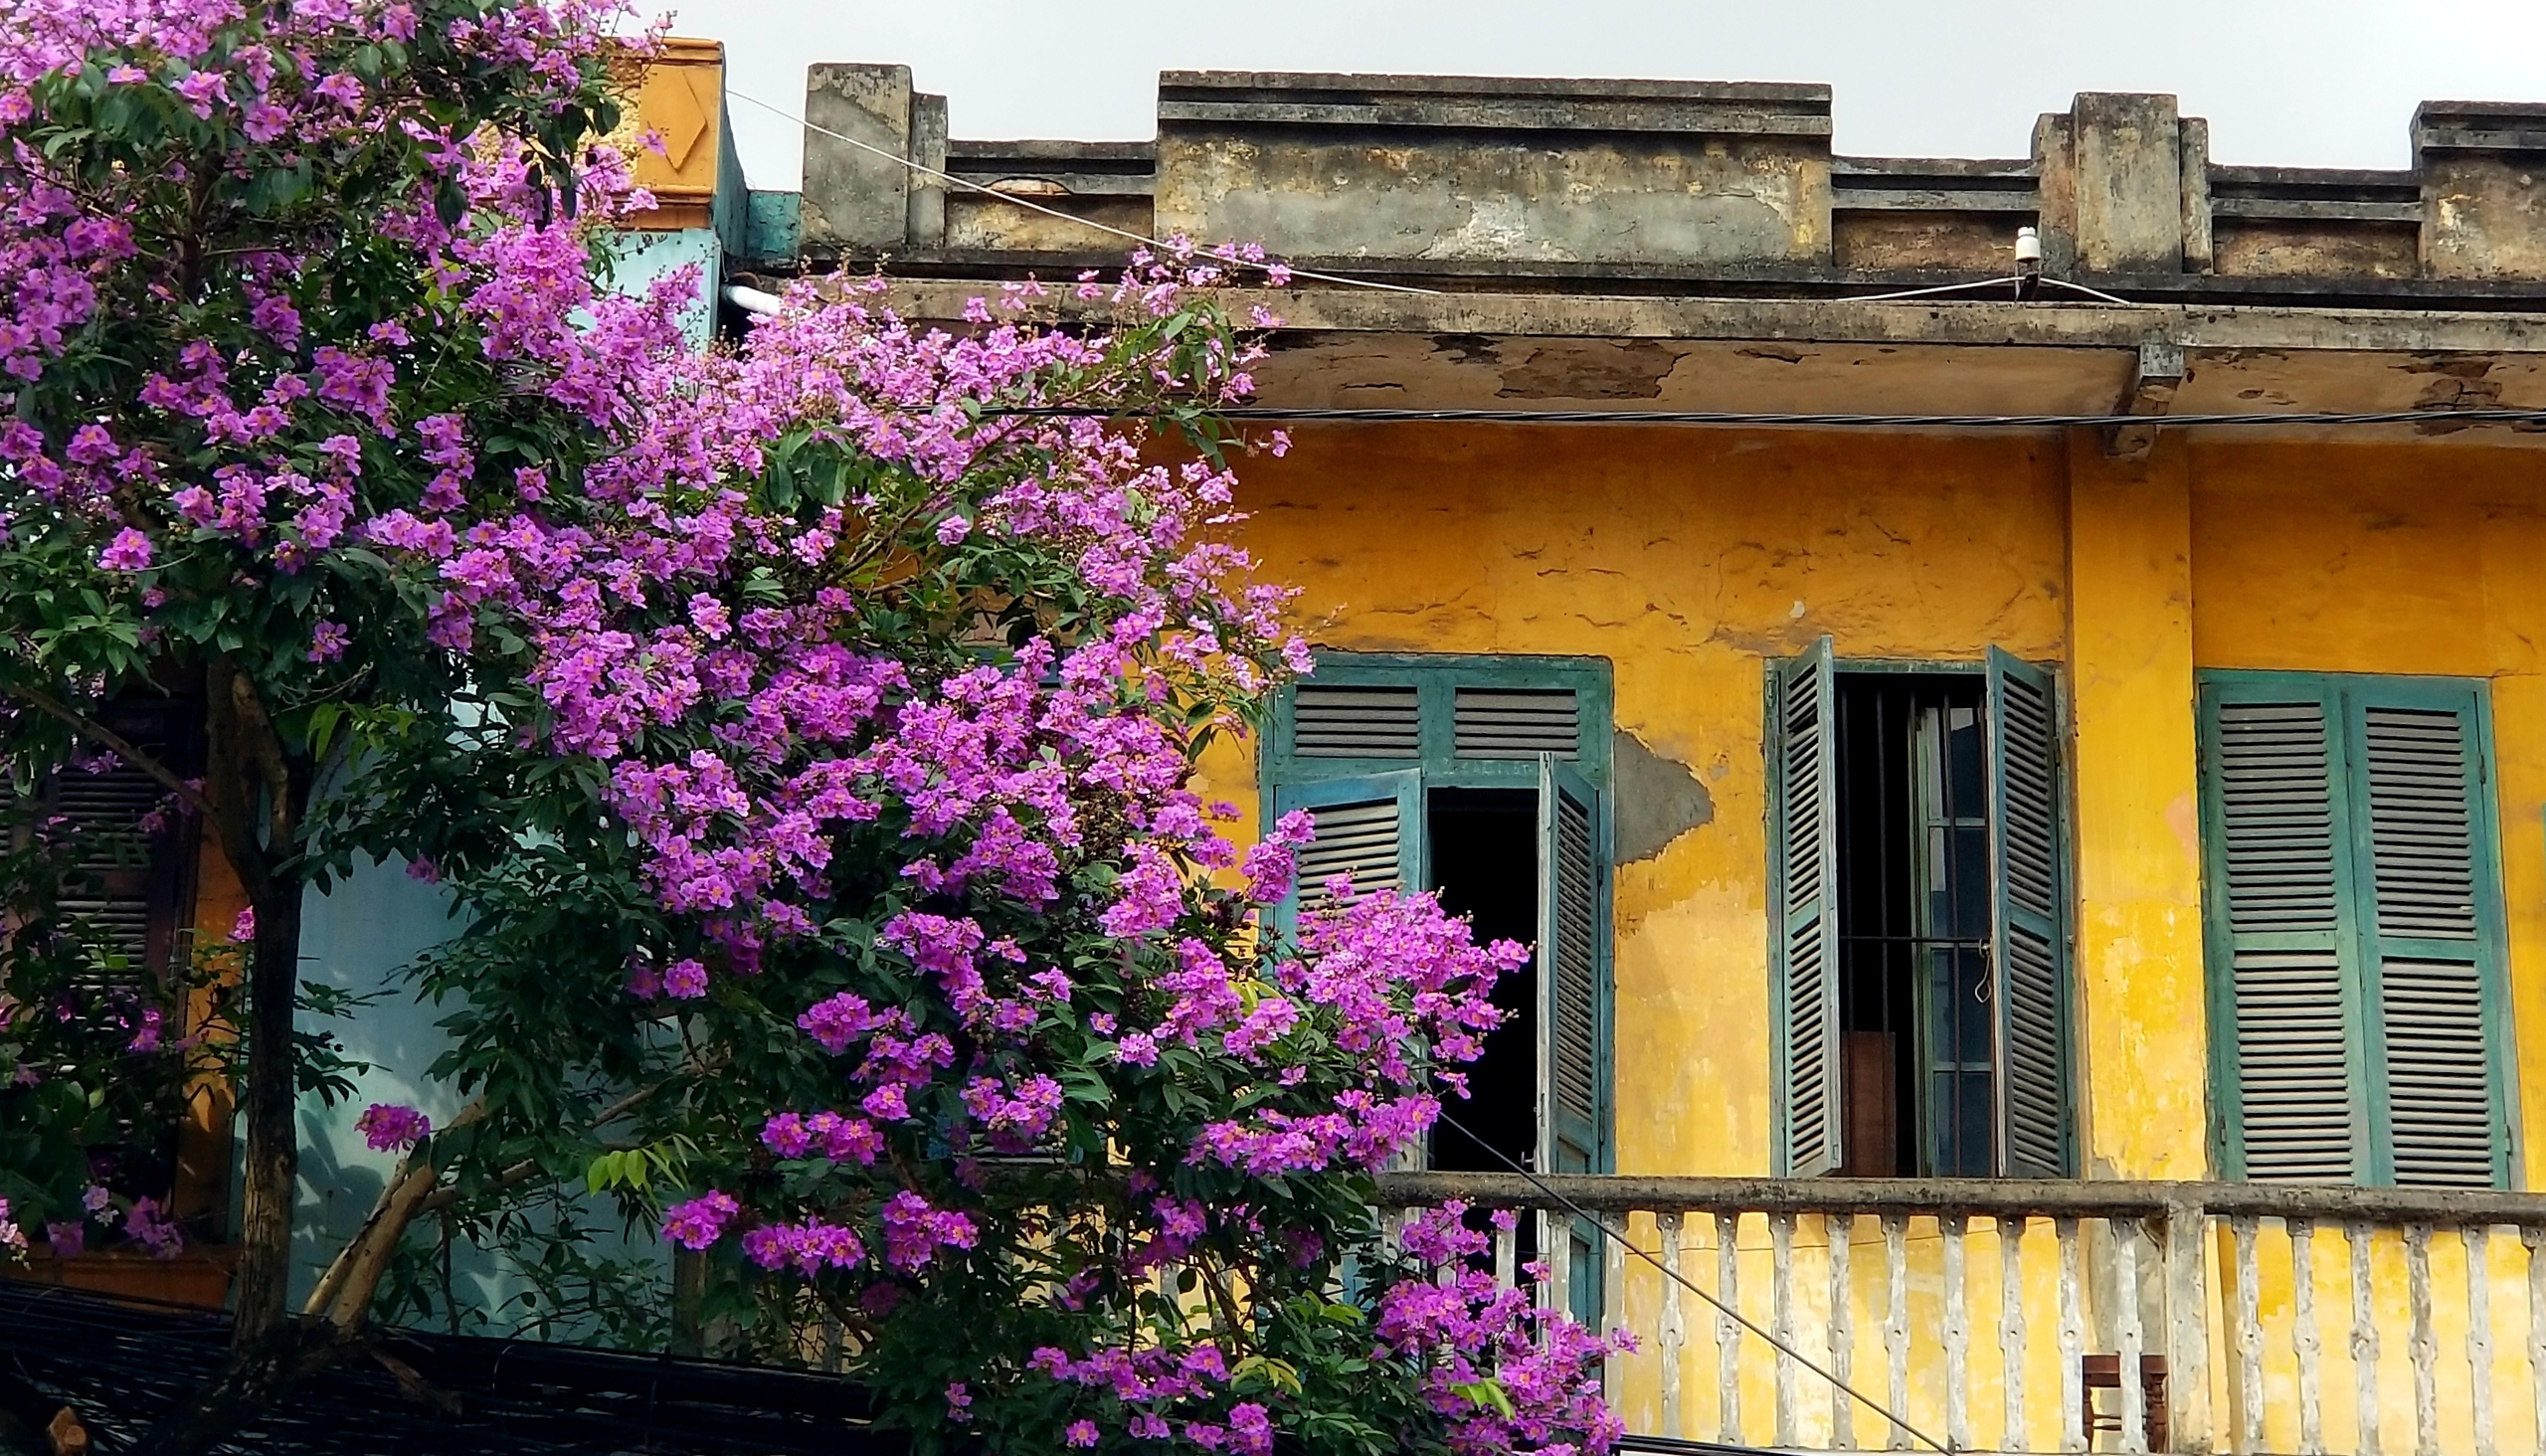 Hoa bằng lăng tím biếc bên ban công một ngôi nhà được xây dựng từ thời Pháp thuộc trên phố Cầu Đất, Q.Ngô Quyền